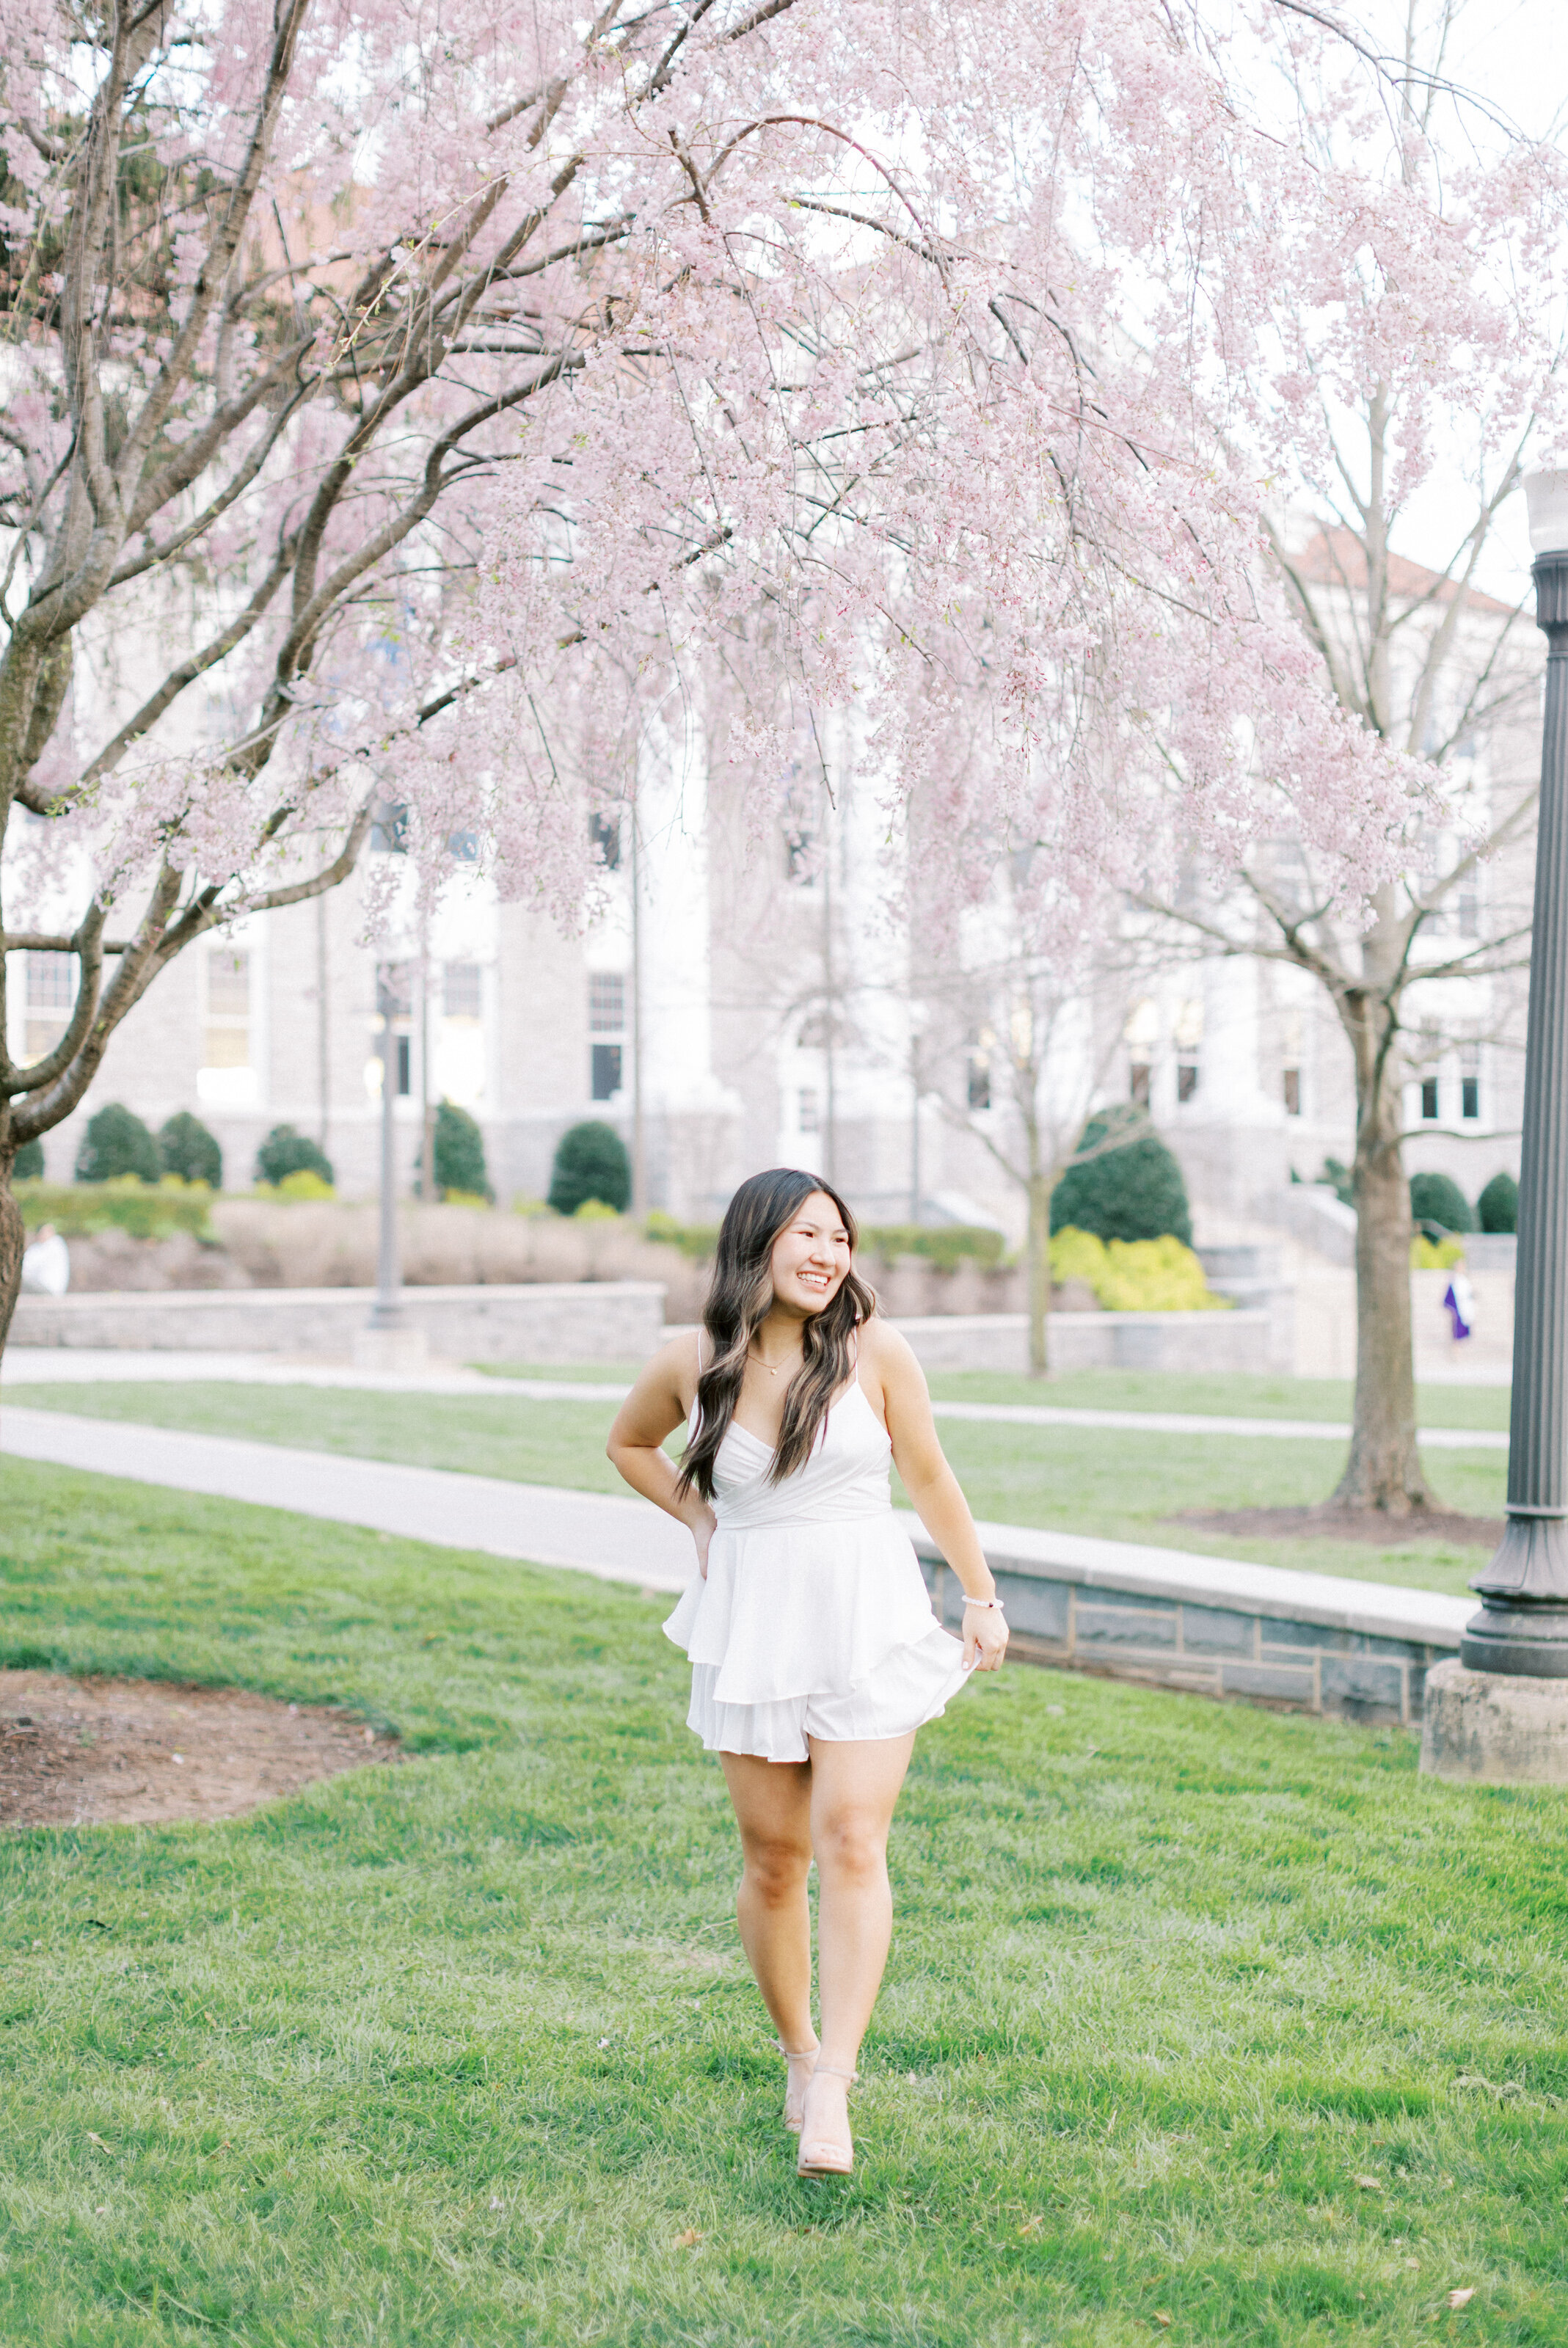 James Madison University Senior in a white dress walking on the Quad in Harrisonburg, VA.